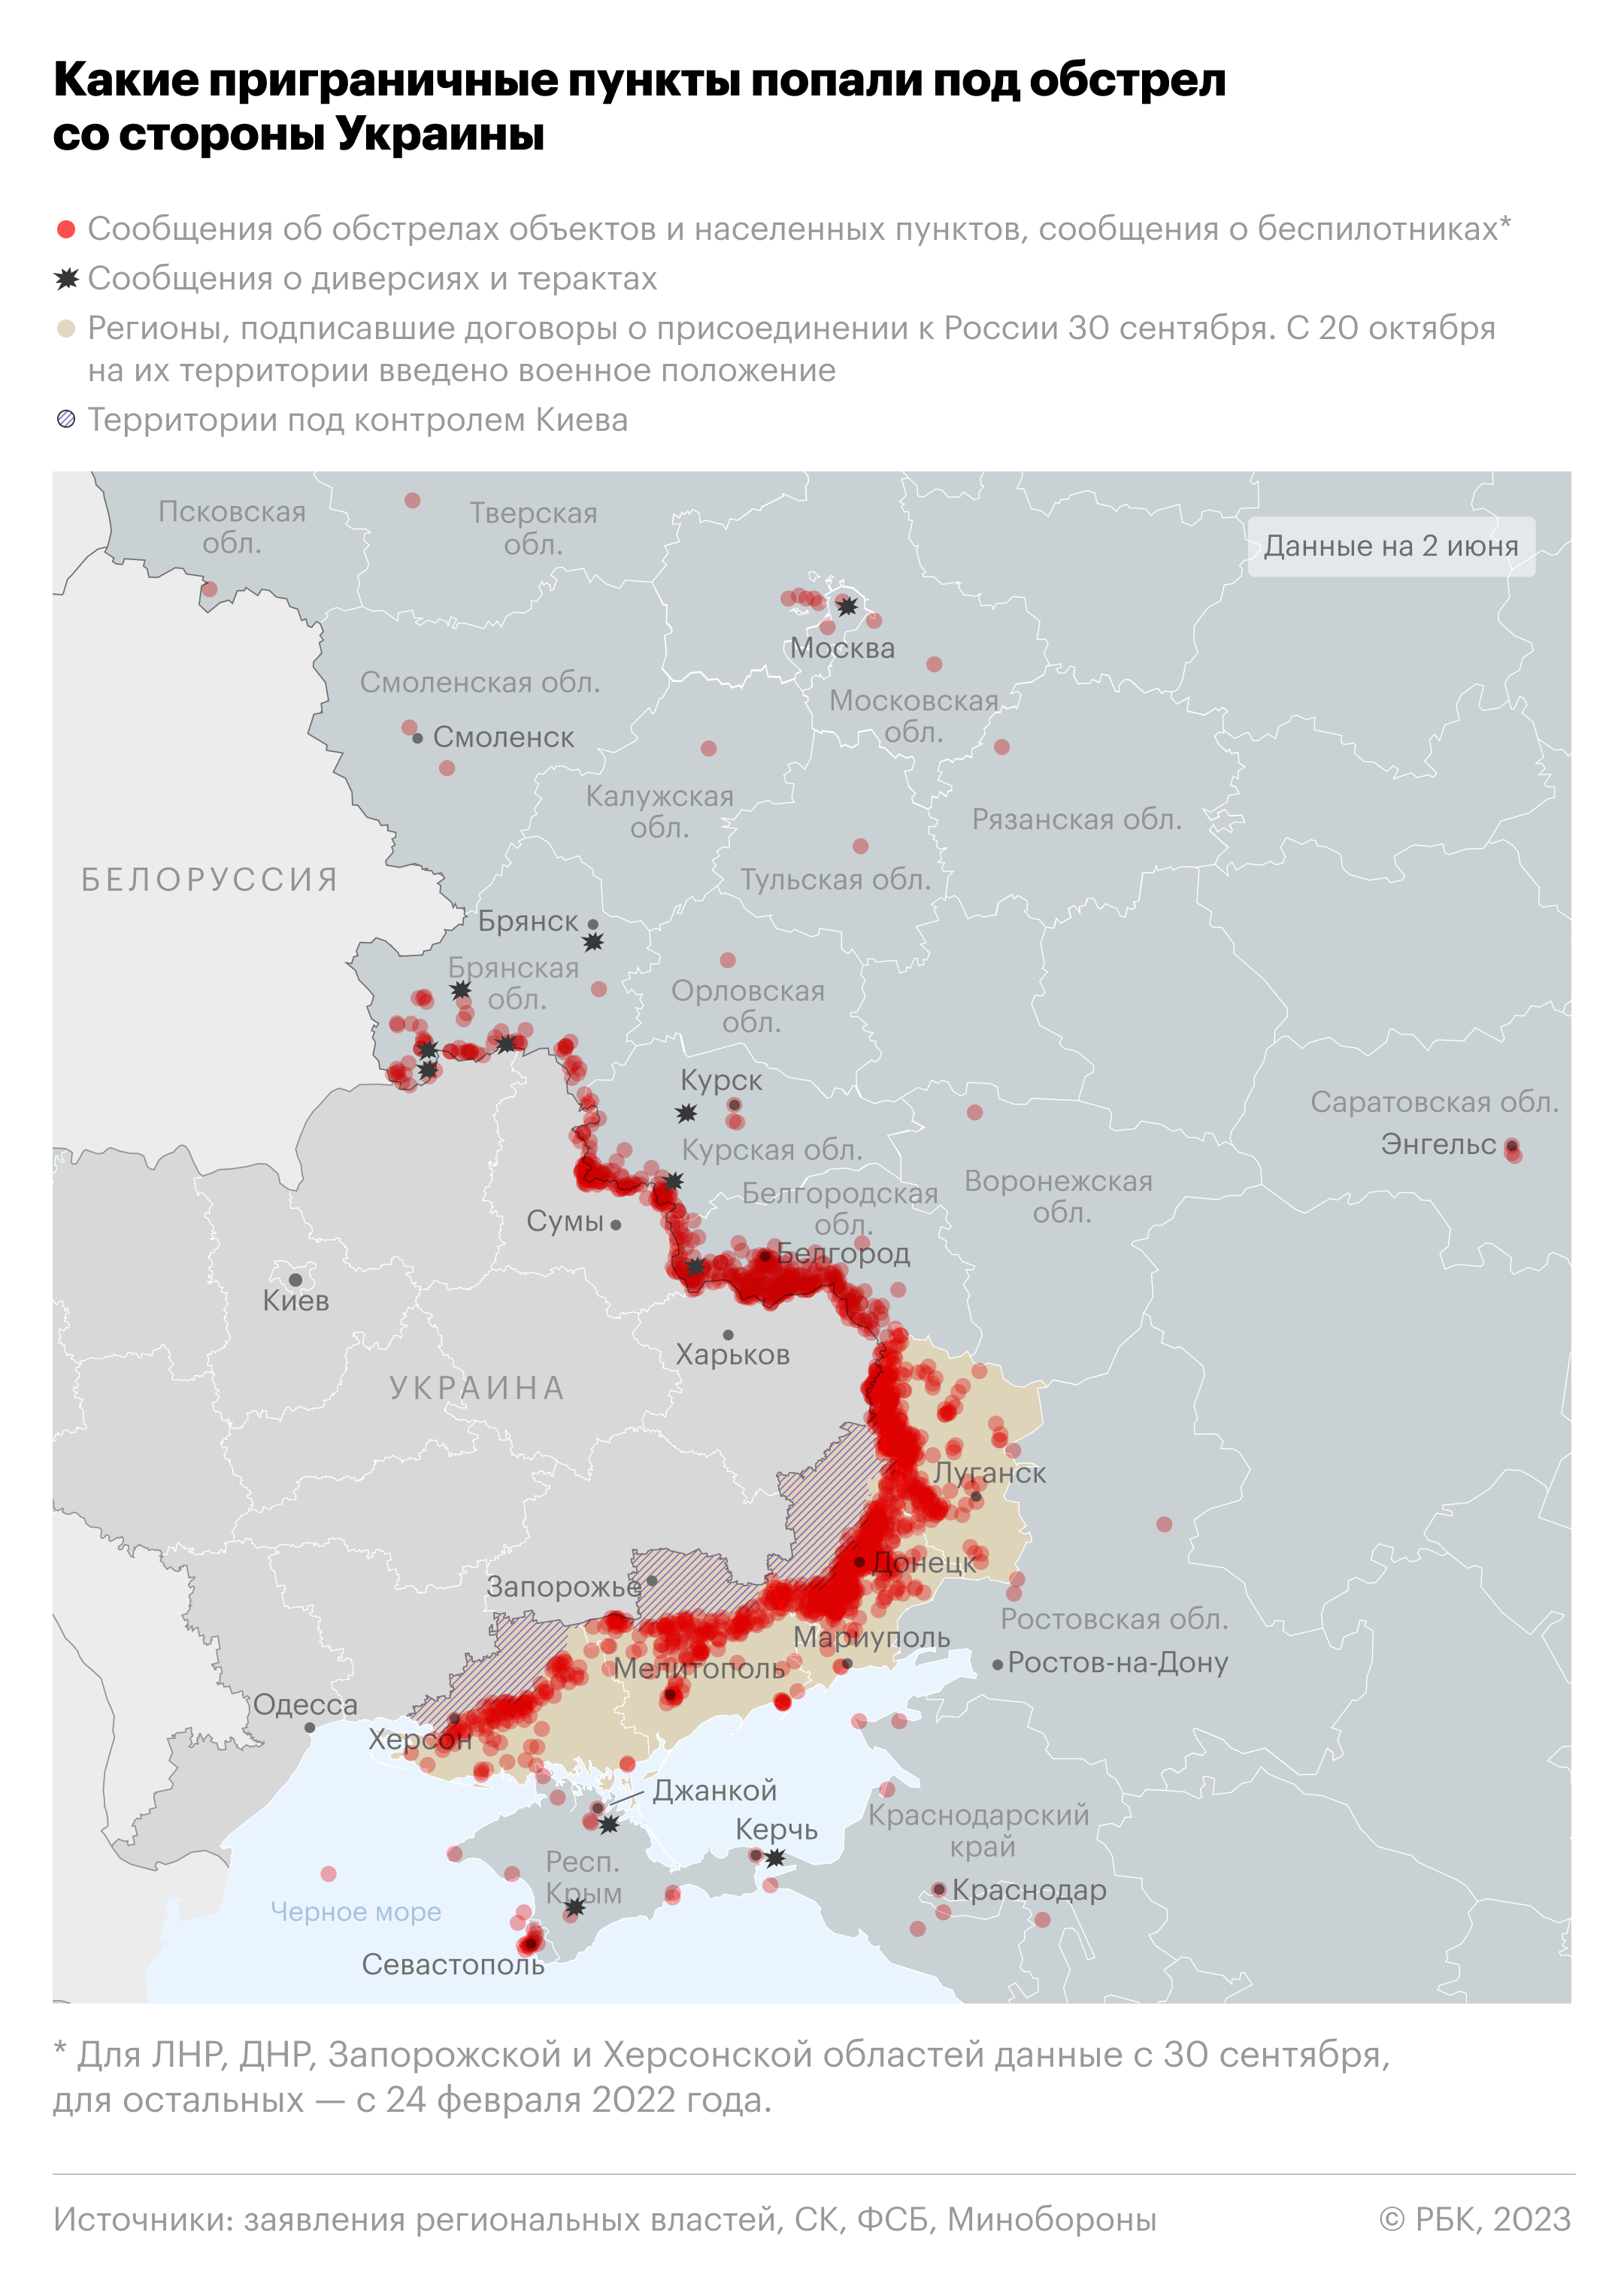 Аксенов сообщил о девяти атаковавших Крым беспилотниках"/>













